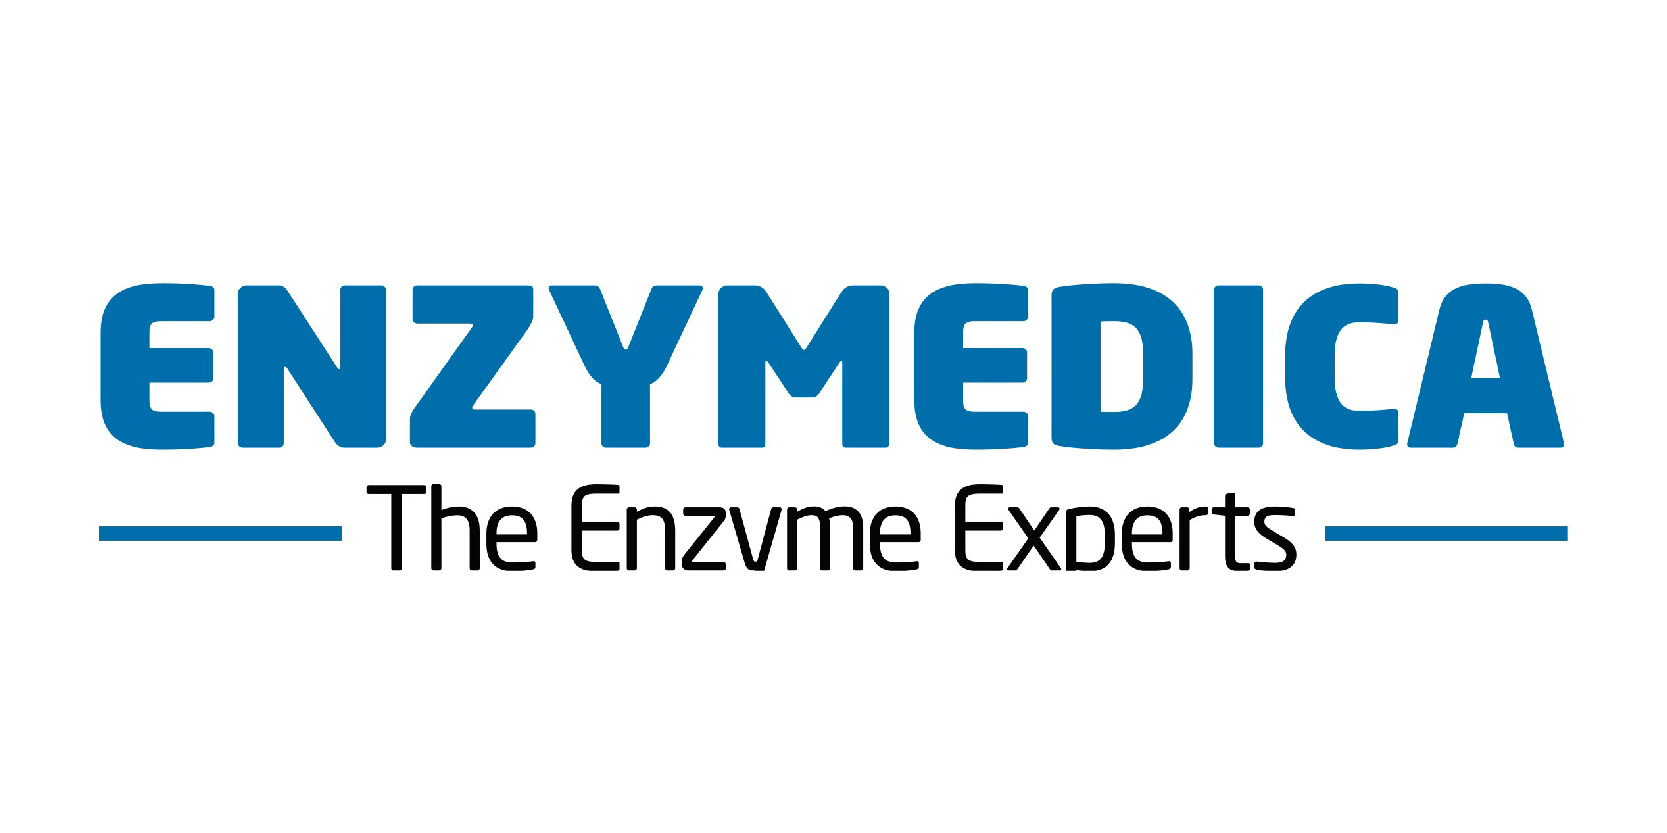 enzymedica